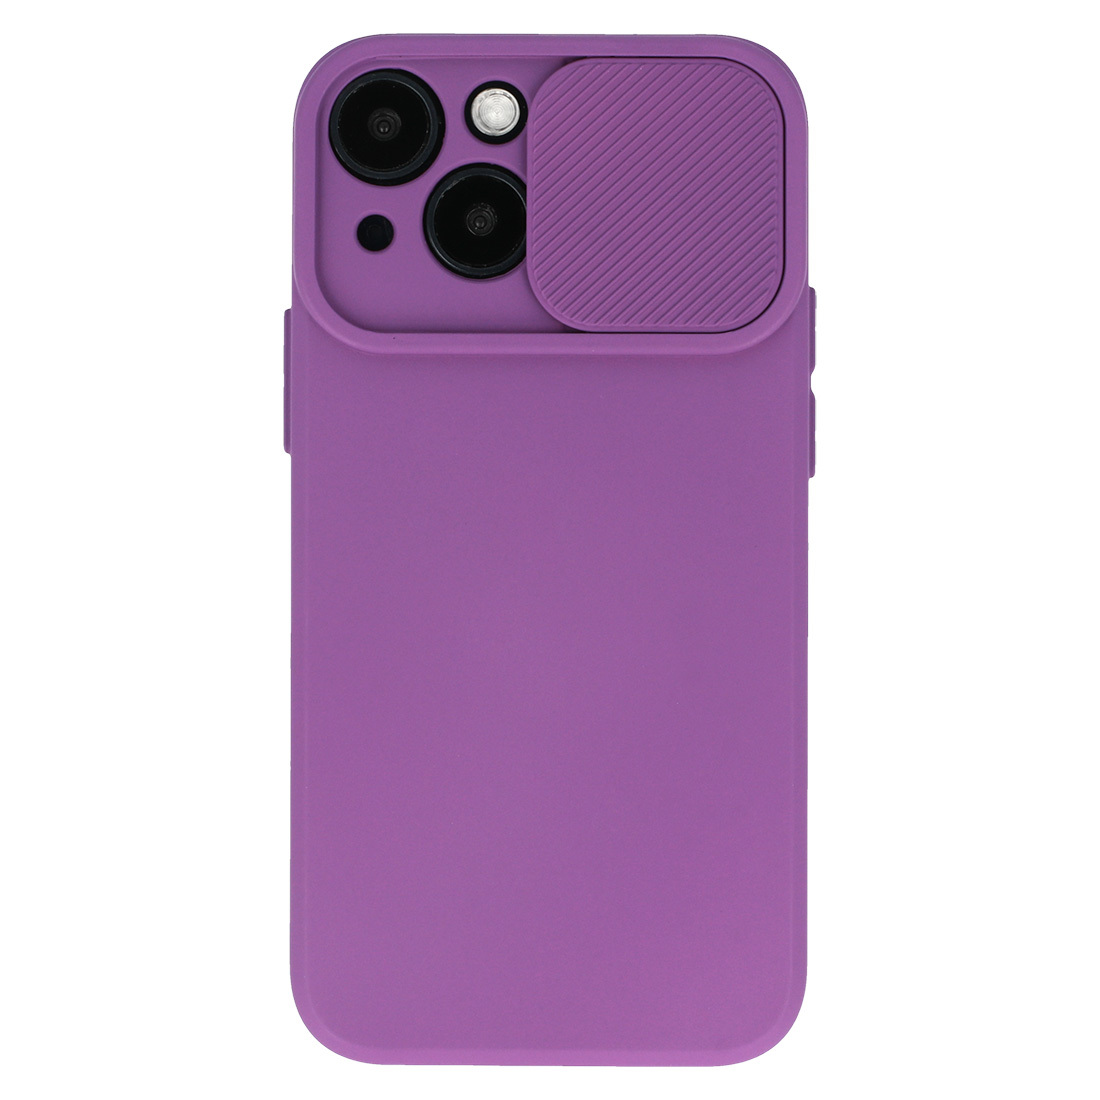 Pokrowiec etui z elastycznego TPU Camshield Soft Case fioletowe APPLE iPhone 11 Pro Max / 2